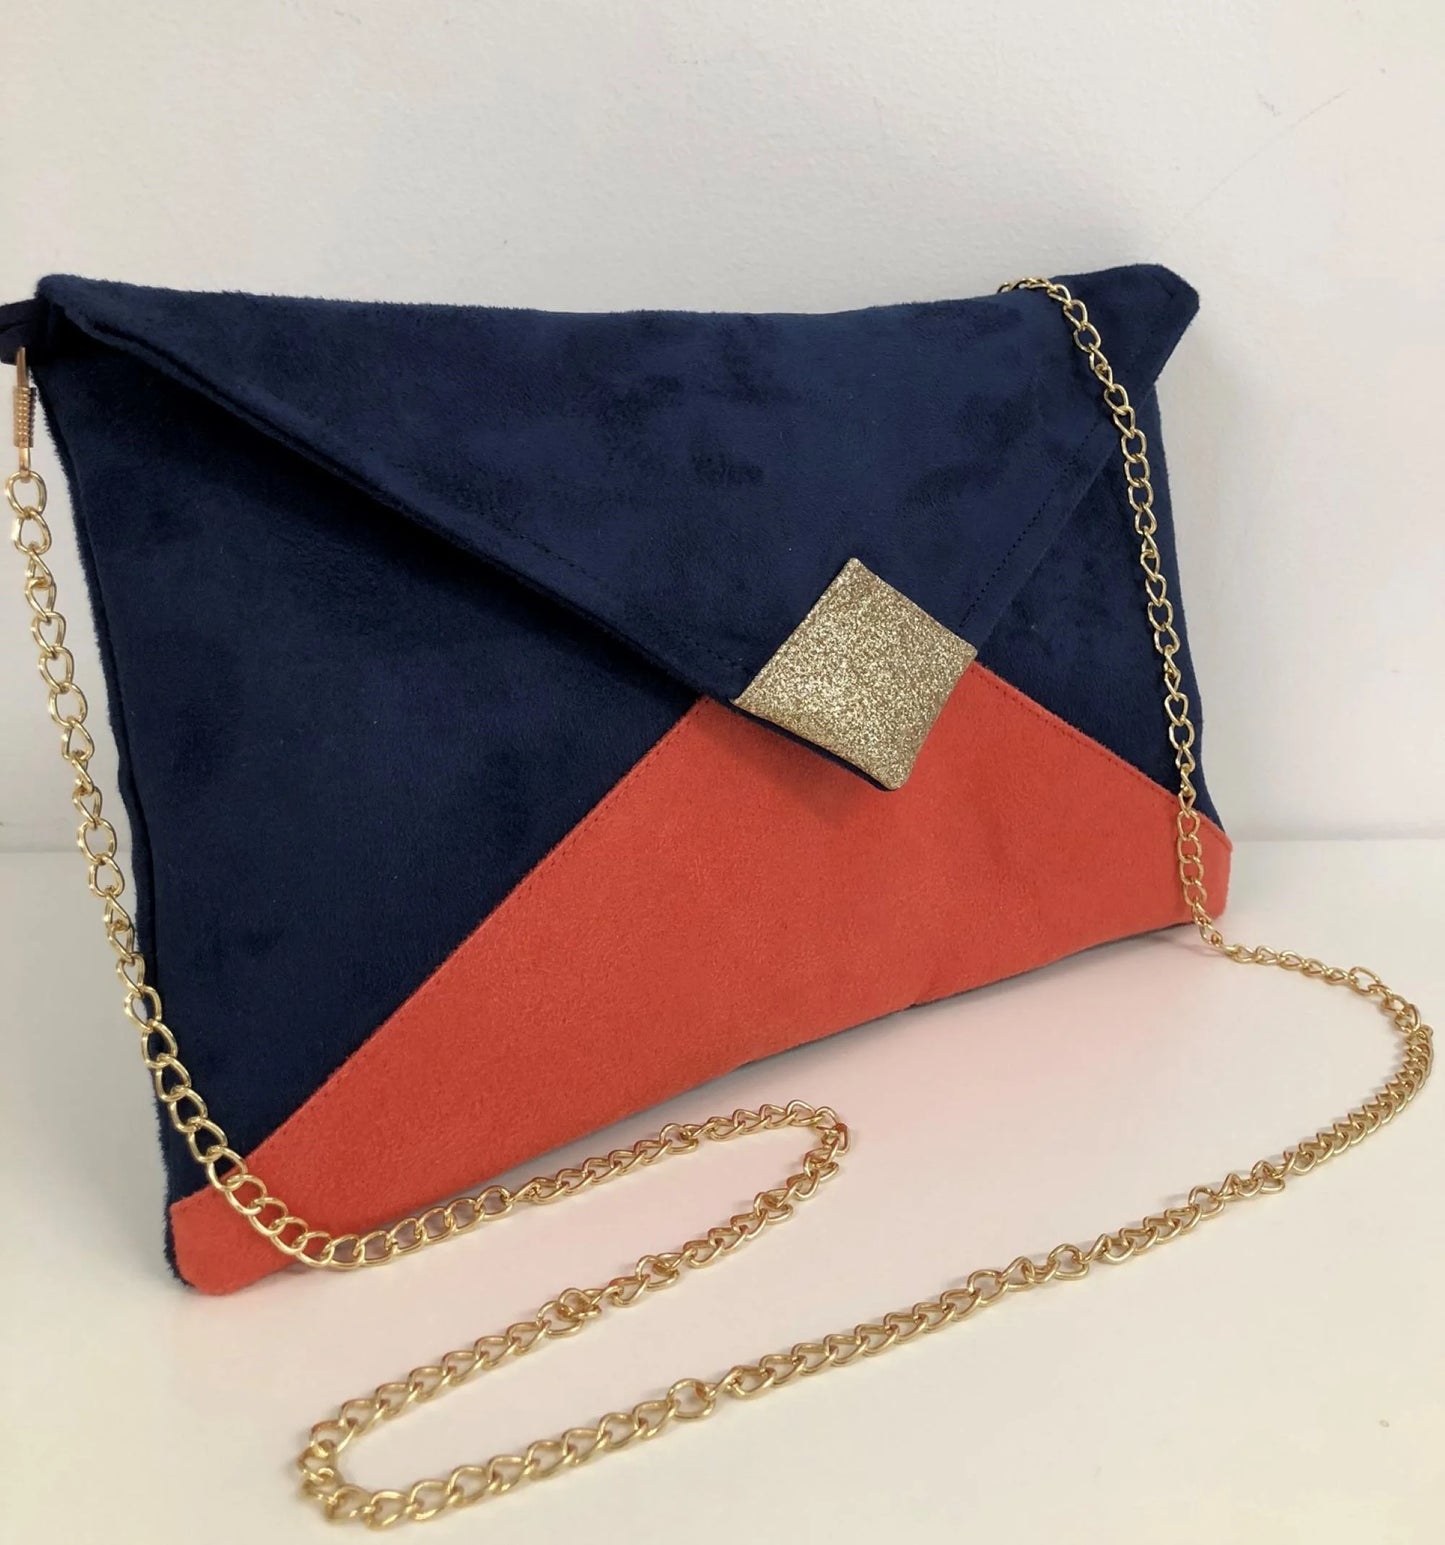 Le sac pochette Isa bleu marine et corail à paillettes dorées avec chainette amovible.